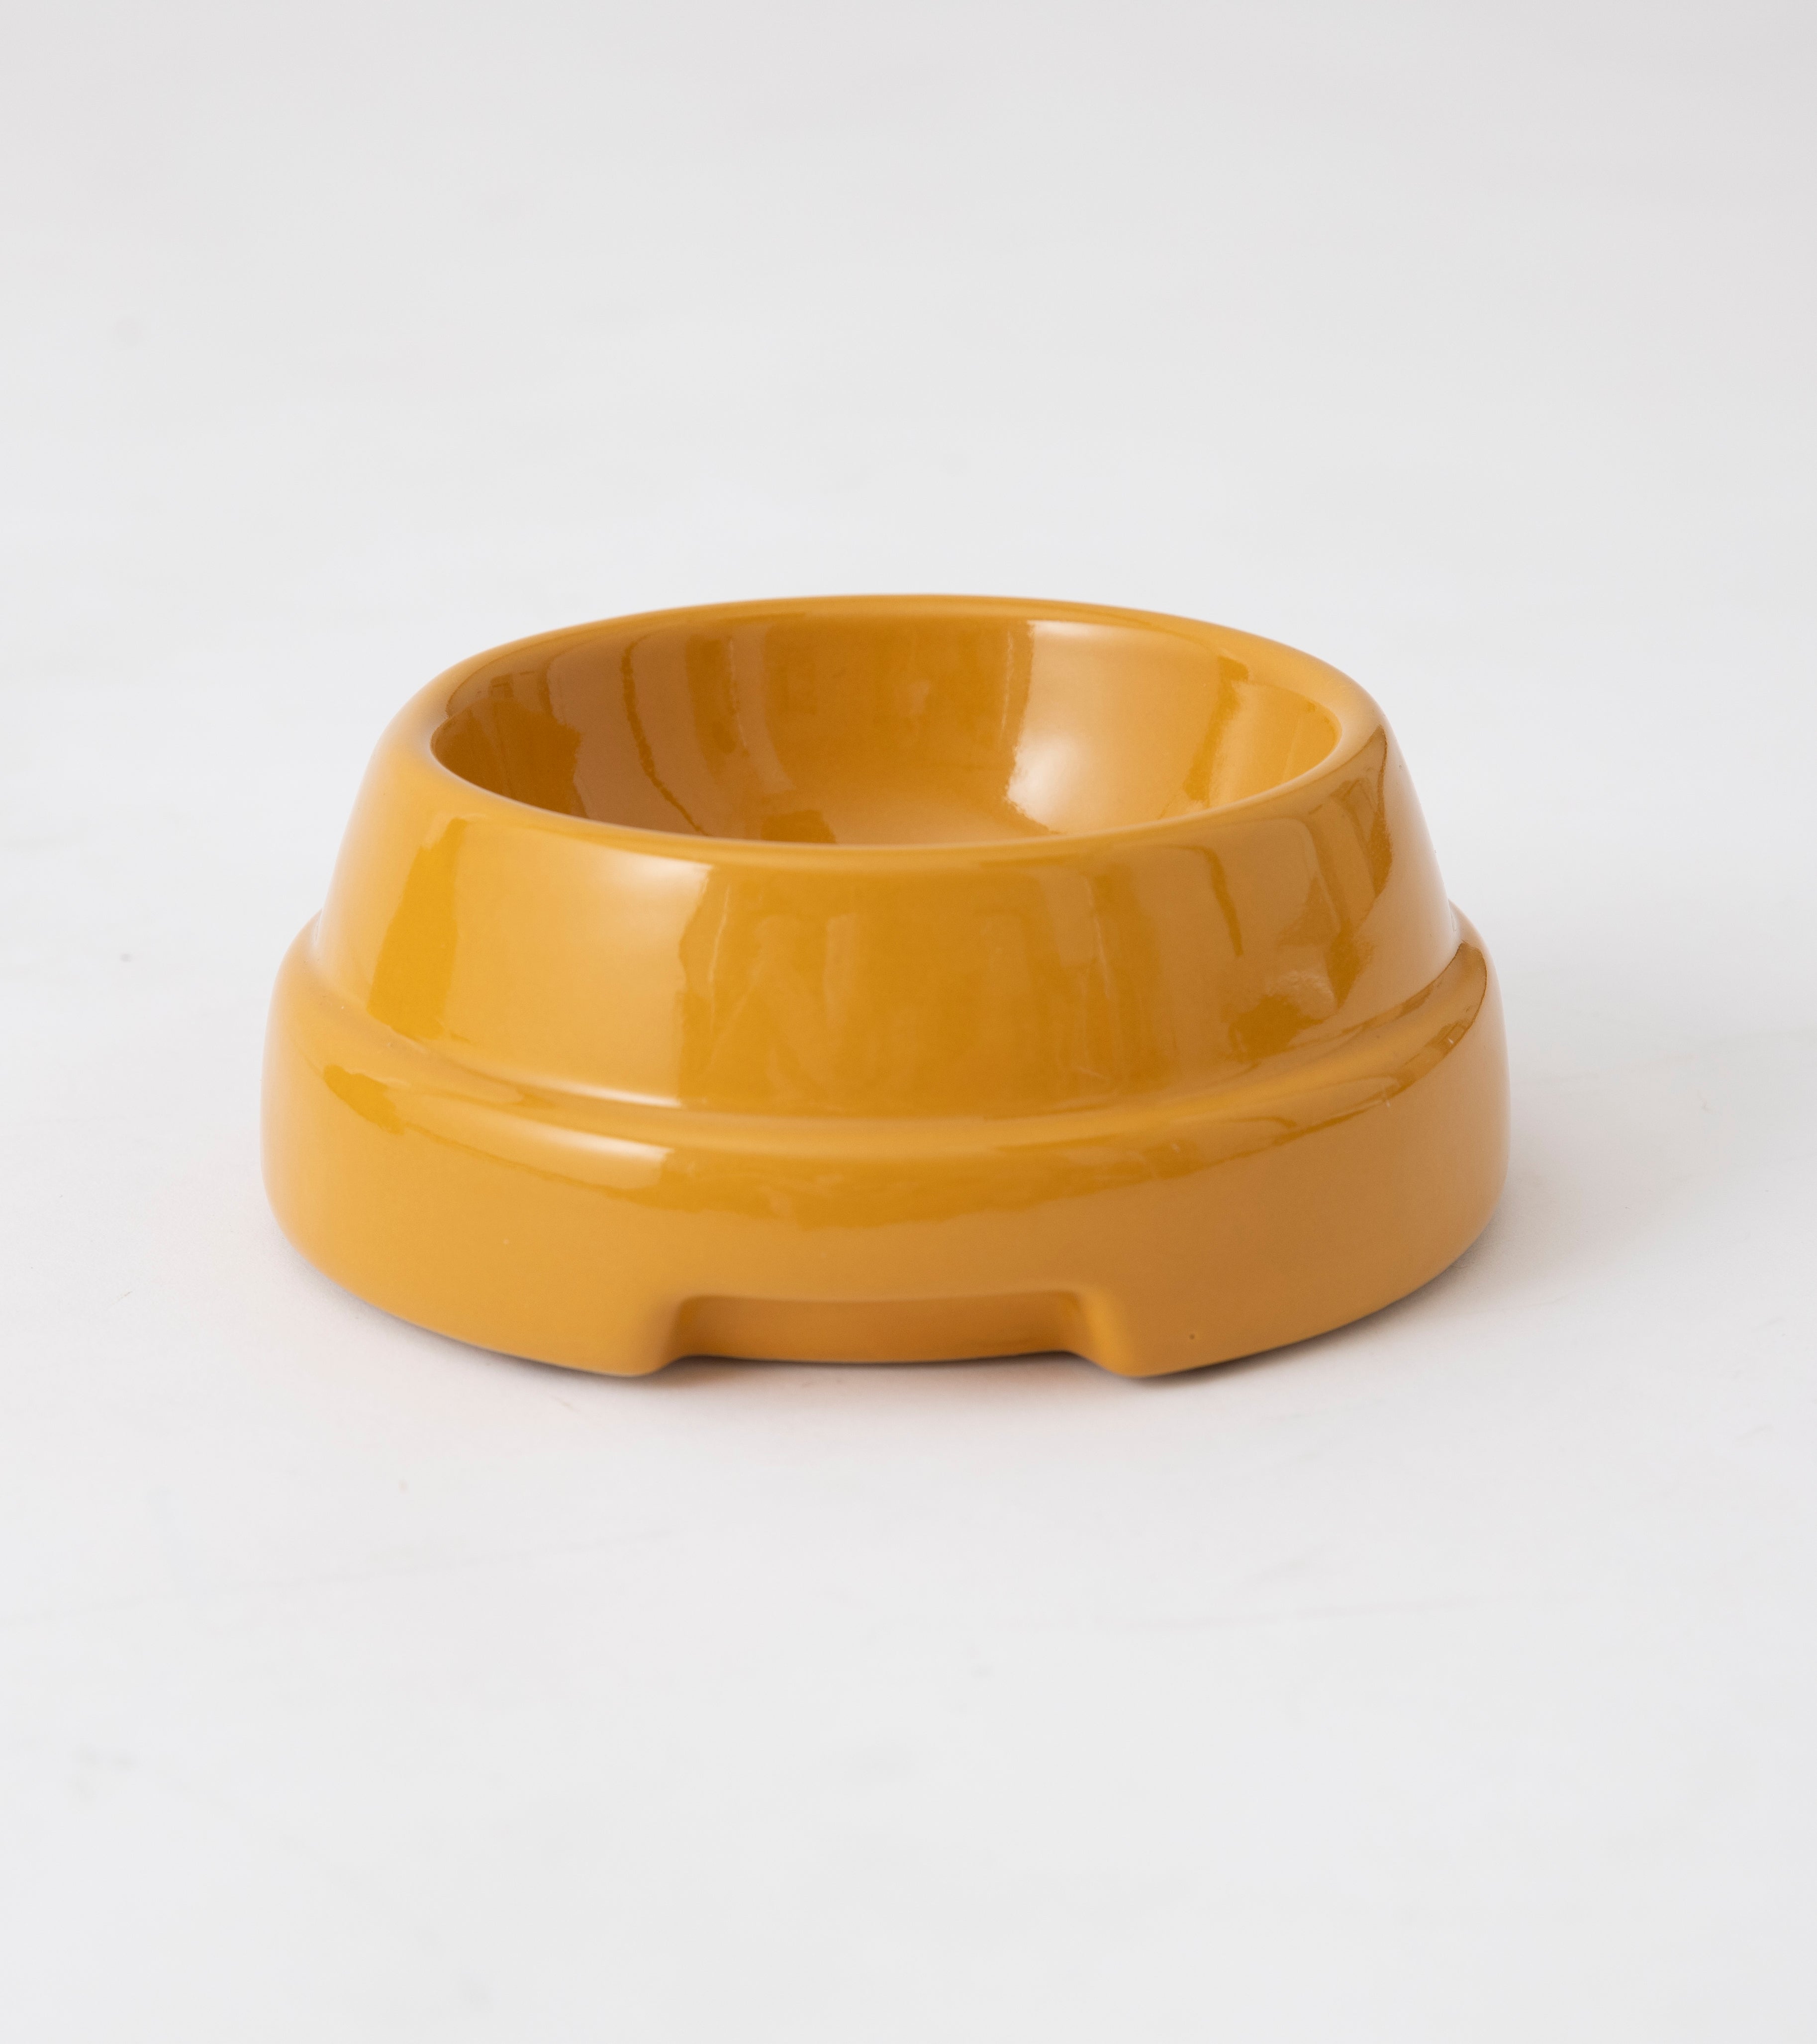 dog-bowl-cermic-3_49d60bfa-edf1-452e-91d4-740e439abb9b.jpg